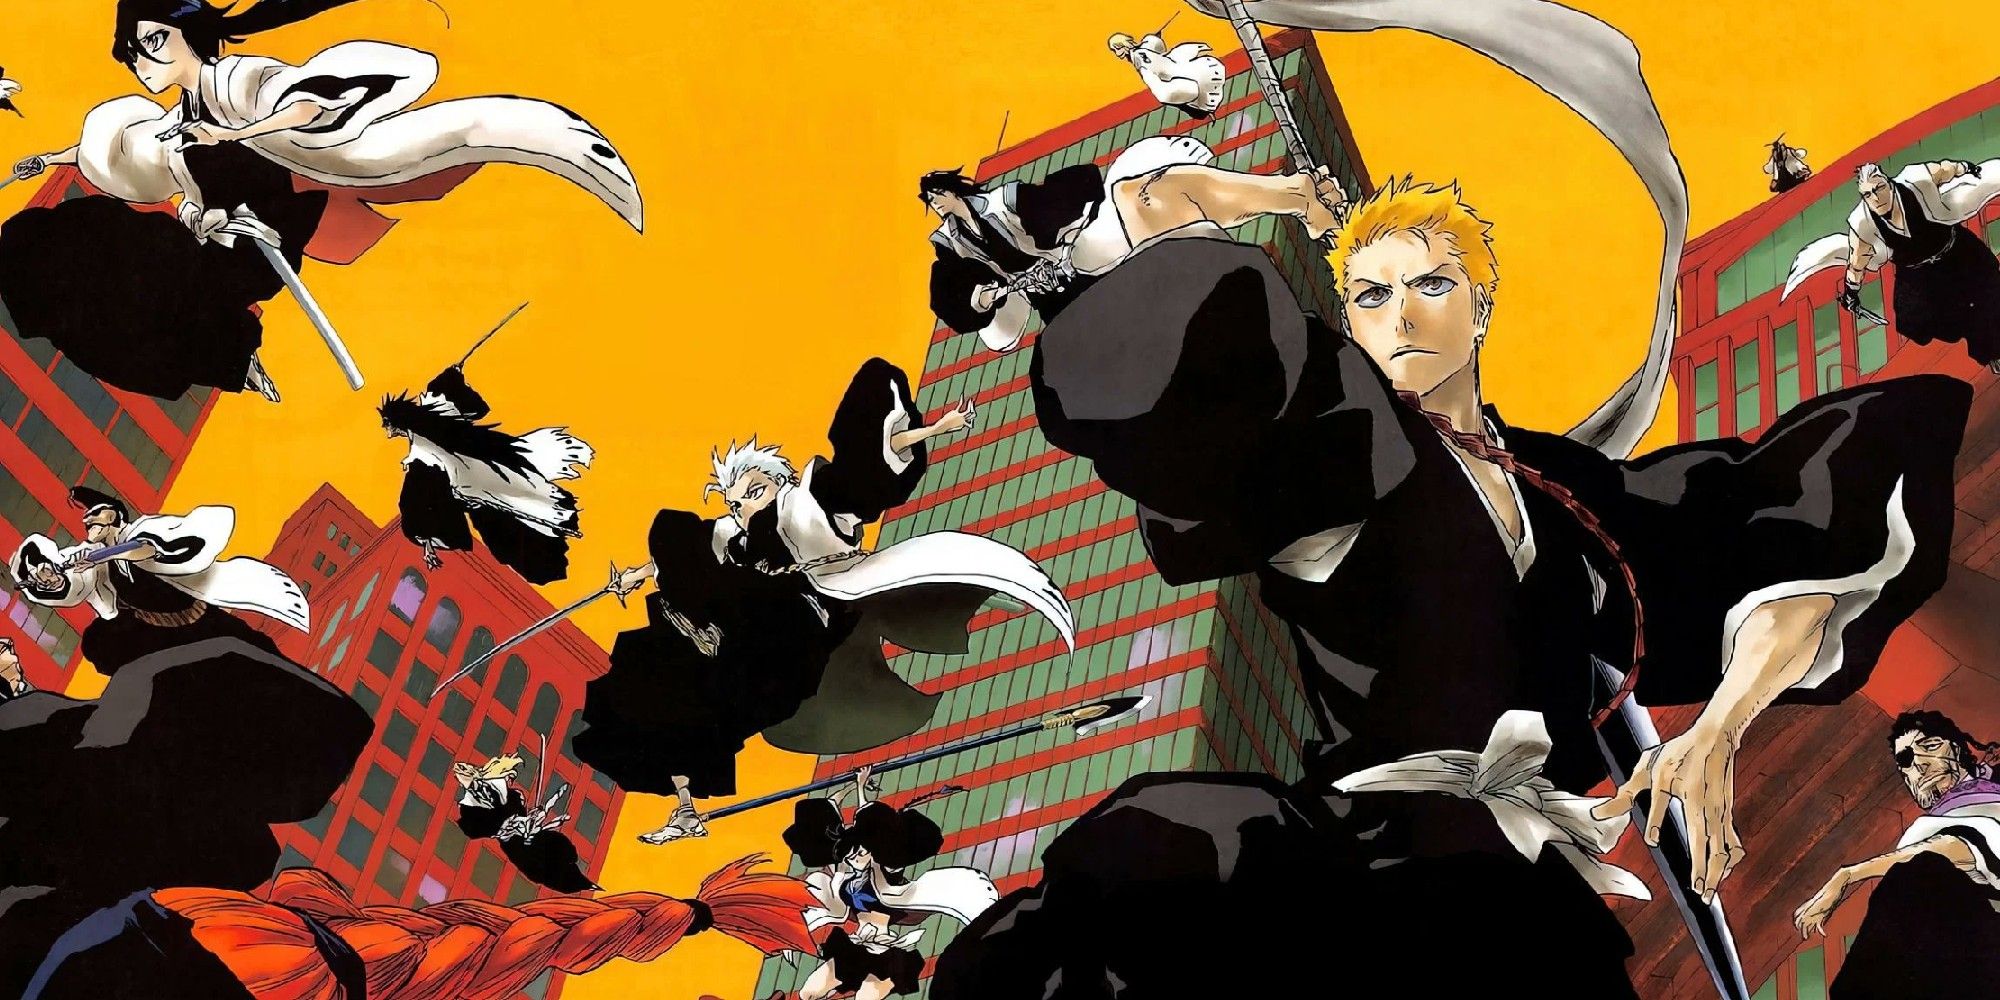 Ilustração em Bleach mostrando Ichigo e os capitães do Gotei 13 no ar e na frente de um céu amarelo